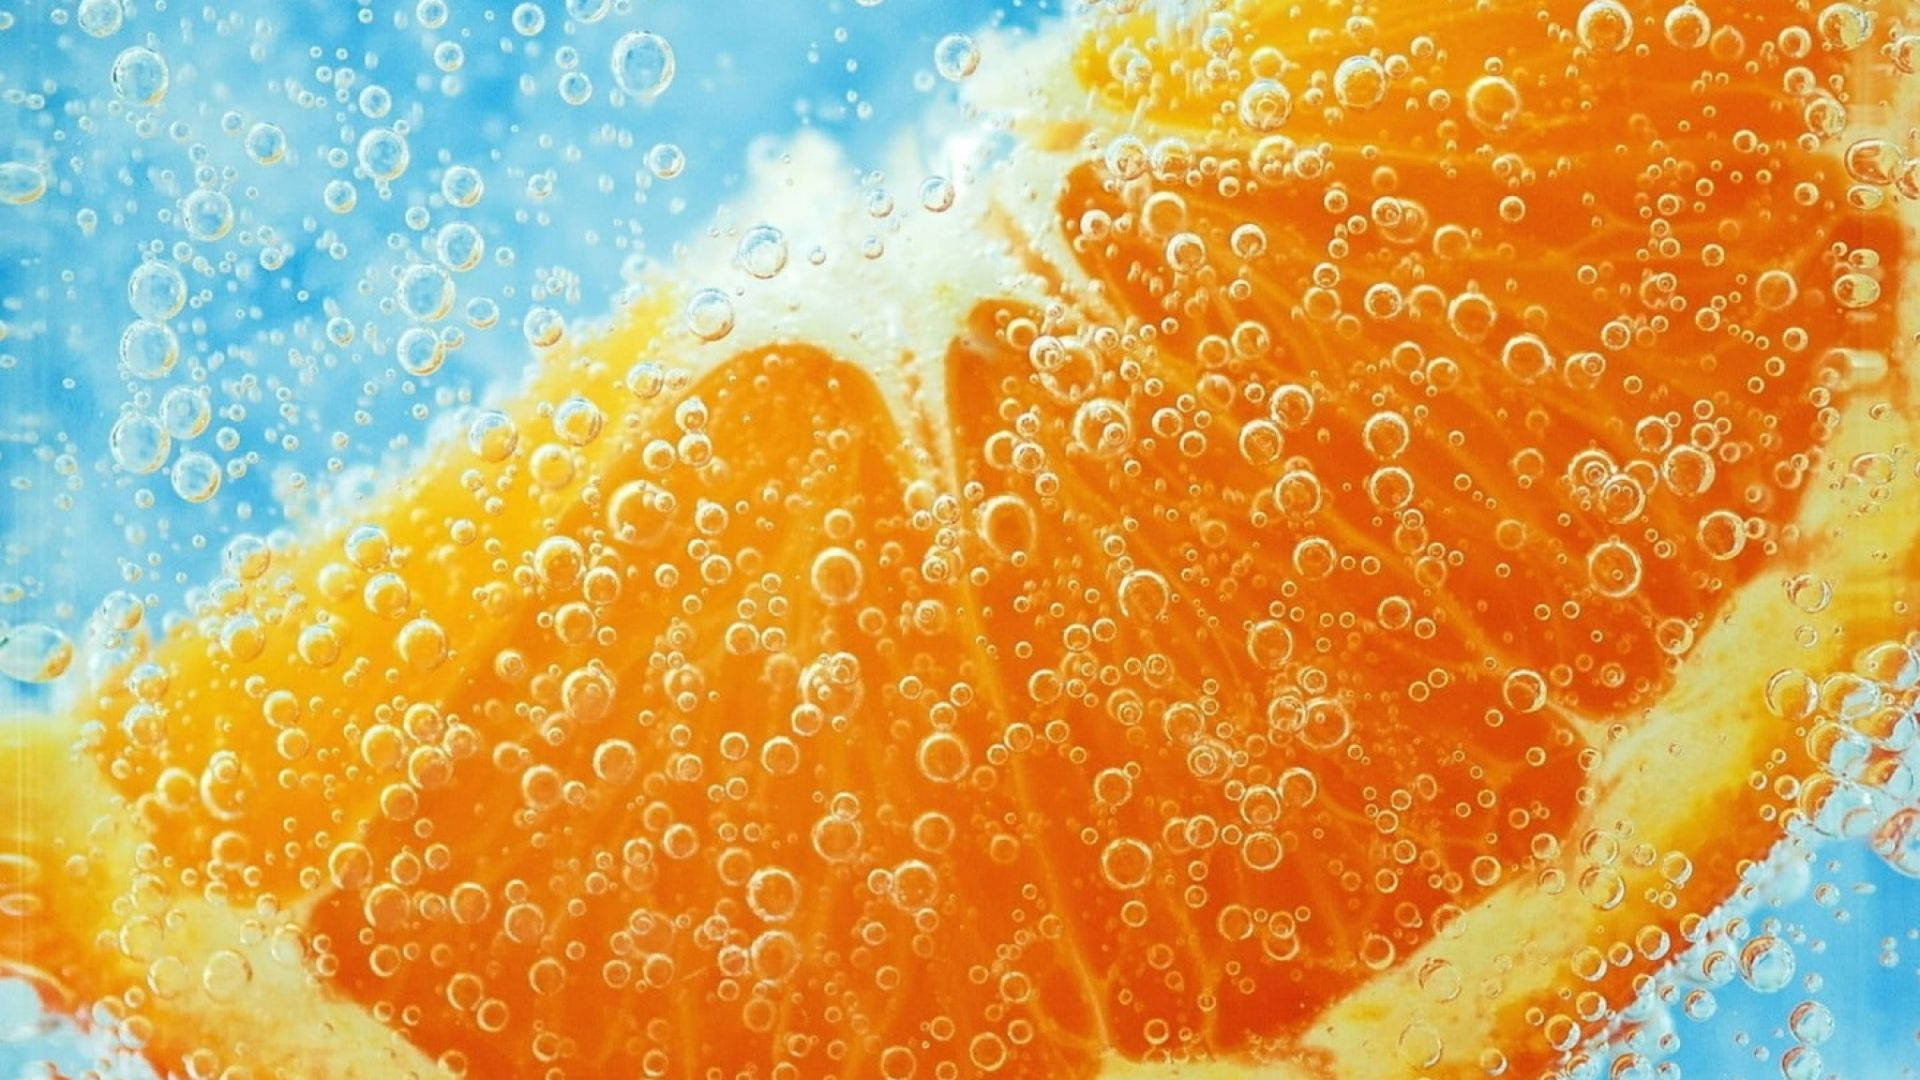 Orange Fruit With Bubbles